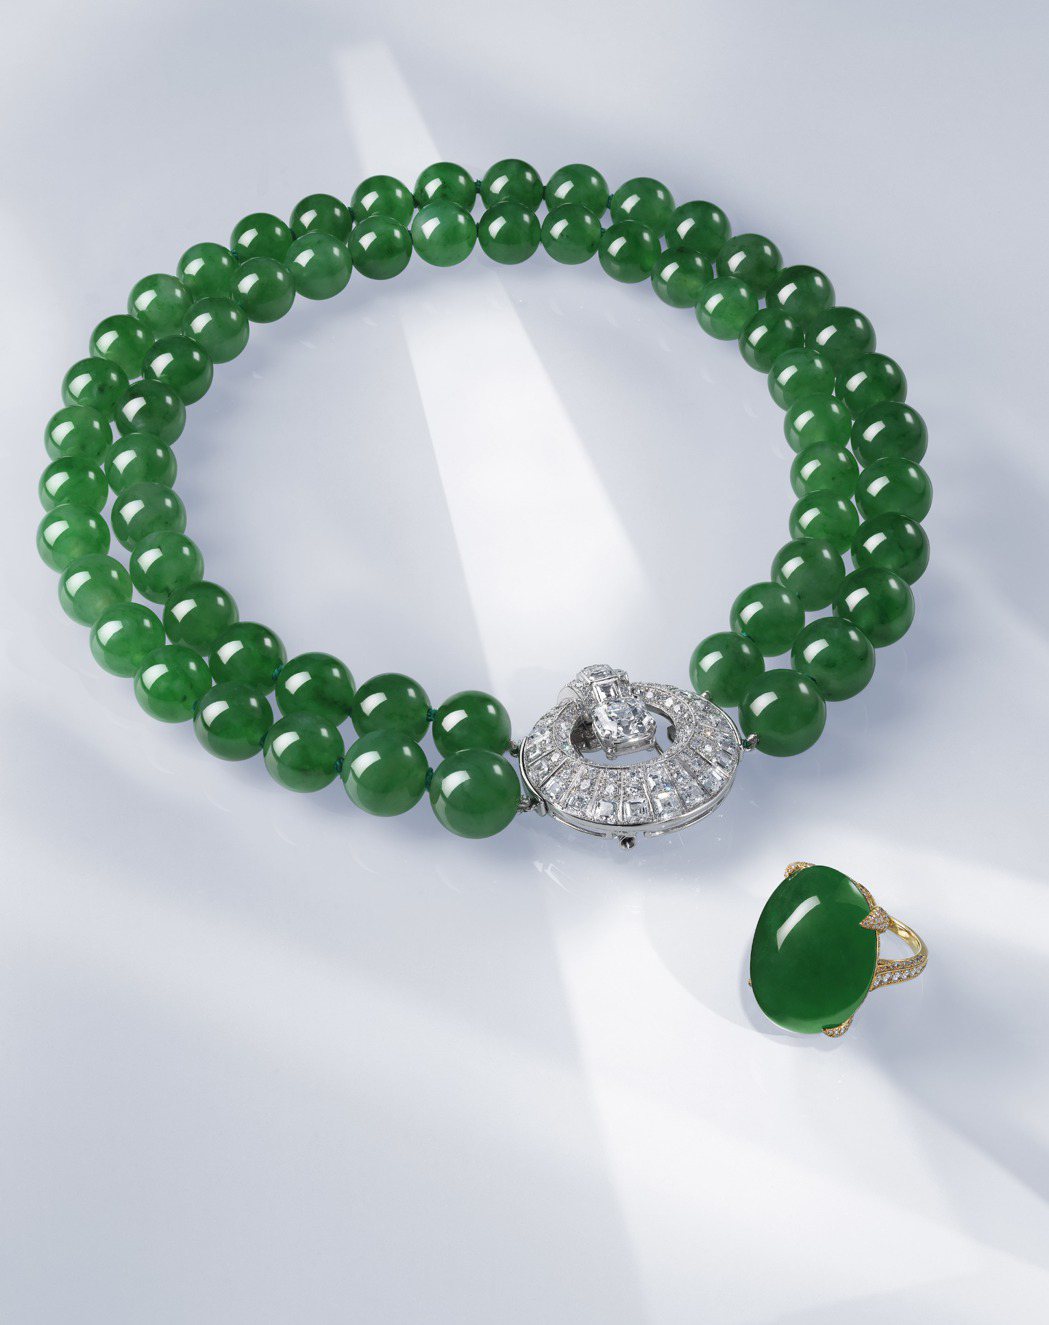 拍品編號17與15的翡翠珠寶：天然翡翠珠項鍊配由Cartier設計的鑽石扣 ，2...